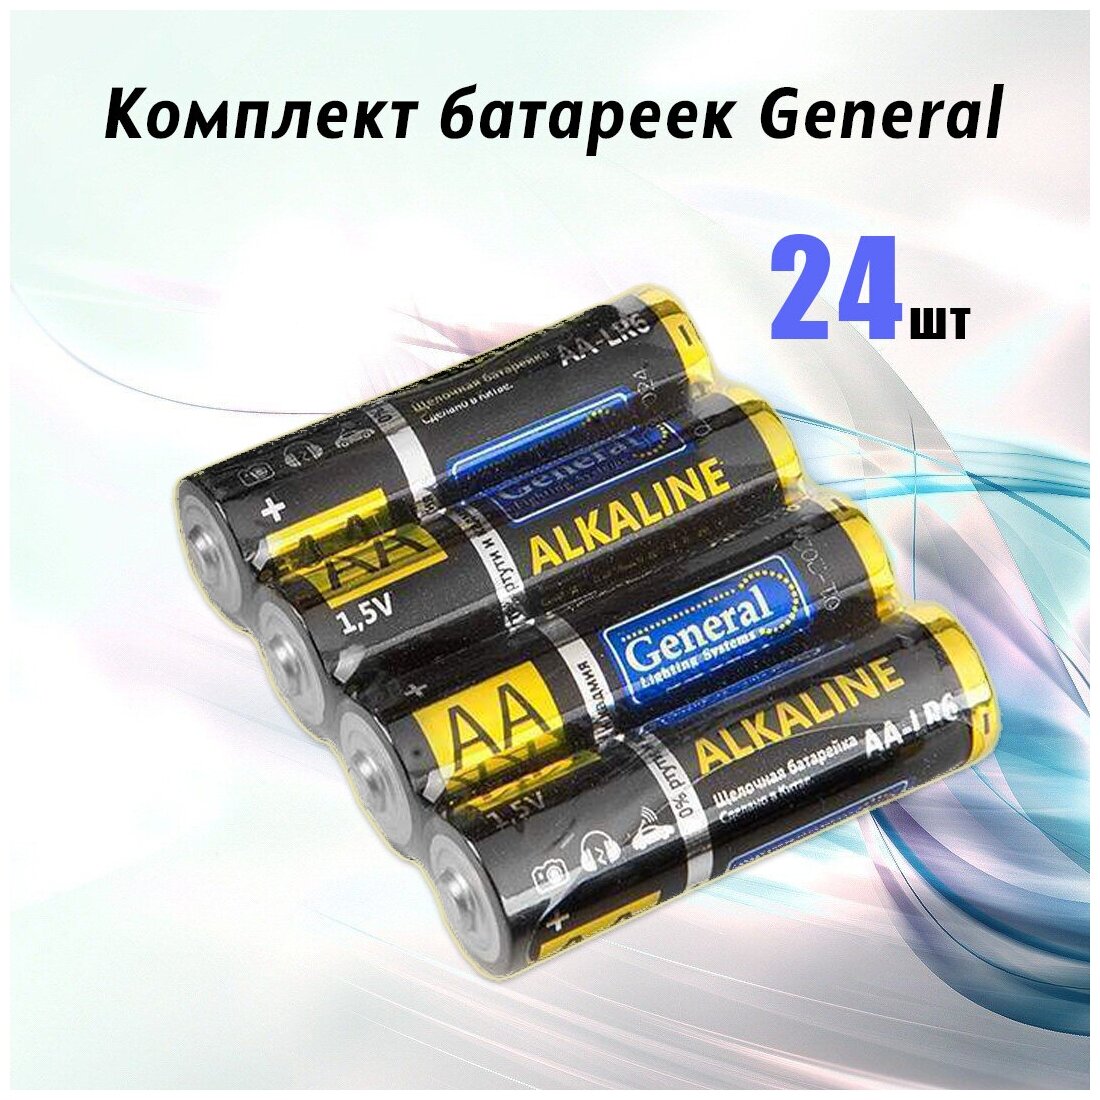 General / Батарейки алкалиновые ALKALINE AA / LR6 / 1.5V / Пальчиковые / Батарейки для игрушек / Увеличенная работоспособность / 24 шт